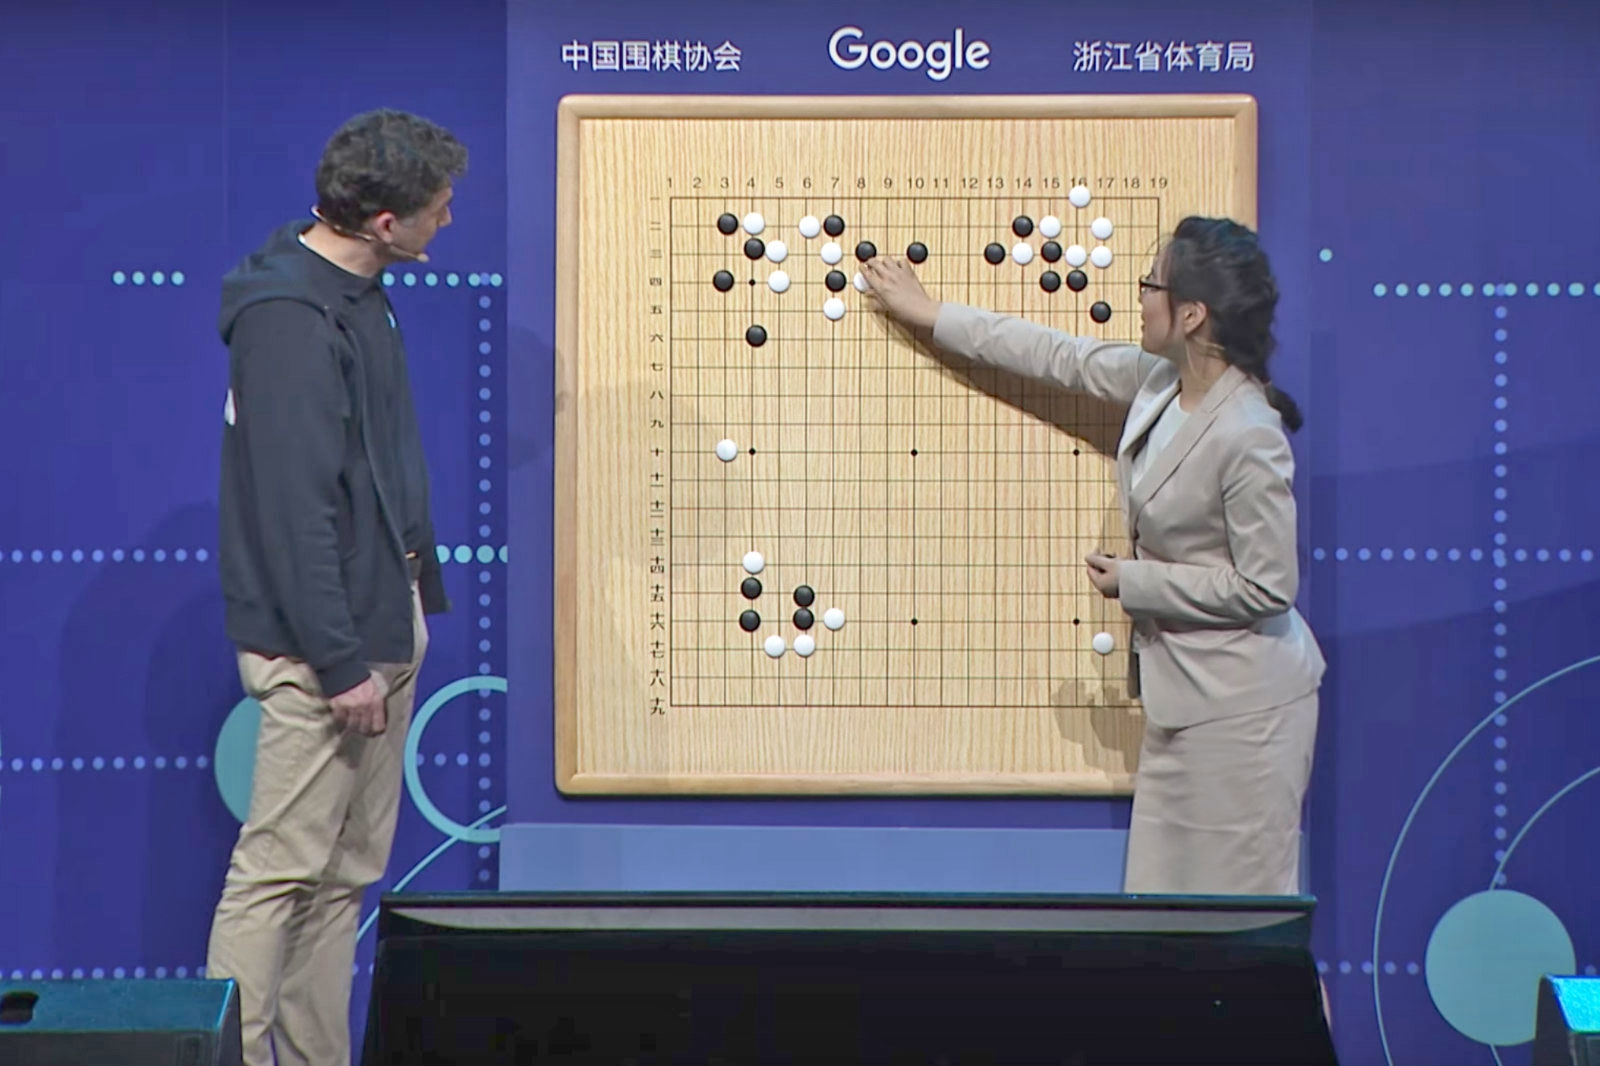 Google's AlphaGo AI no longer requires human input to master Go | DeviceDaily.com